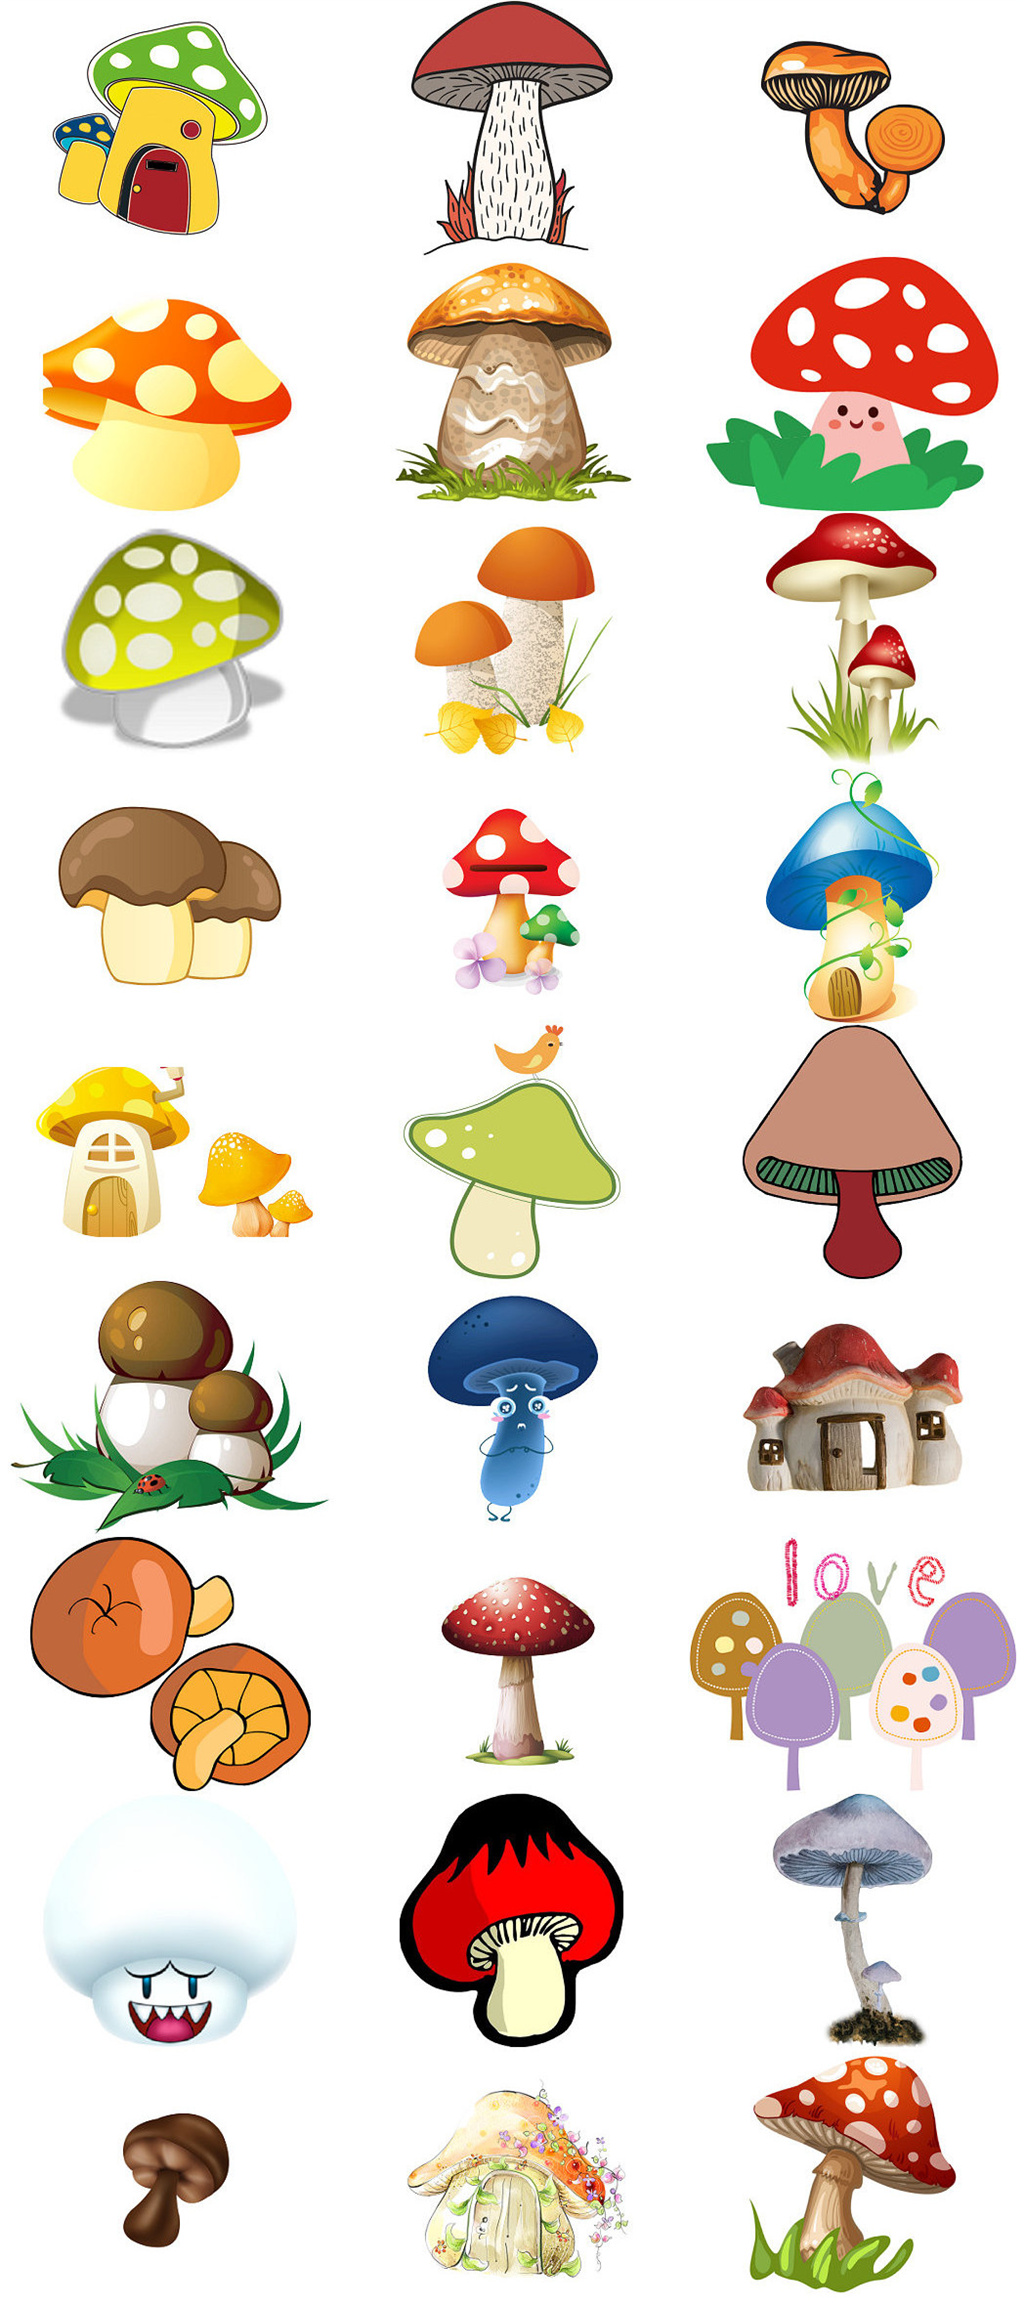 以蘑菇为主题的设计图片